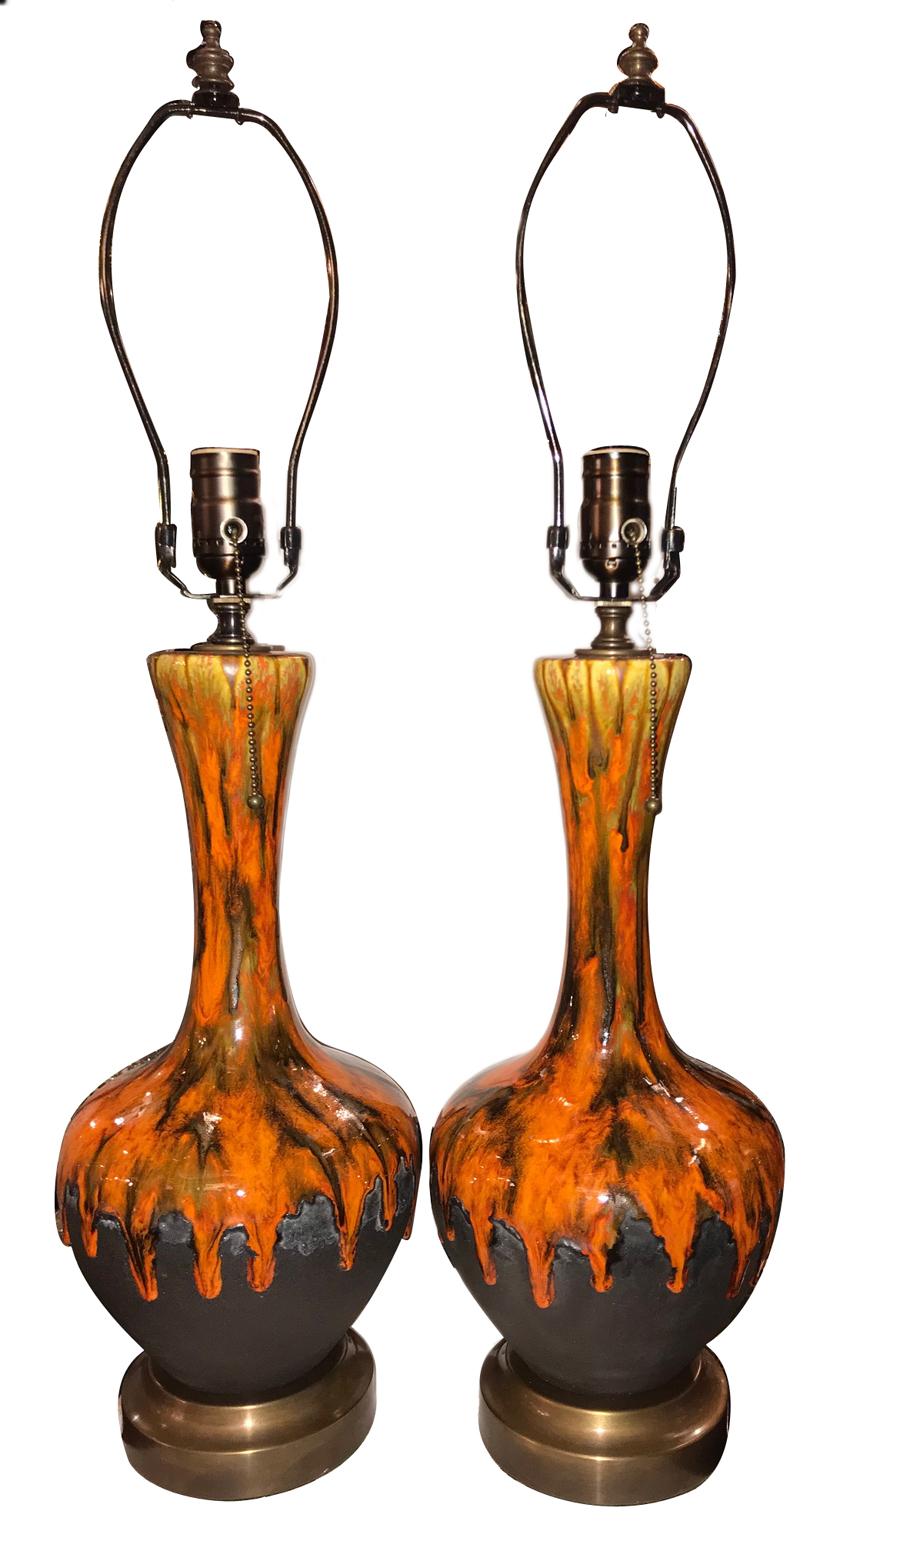 Ein Paar italienische Porzellanlampen aus den 1950er Jahren mit Messingfuß.

Abmessungen:
Höhe des Körpers: 16.75